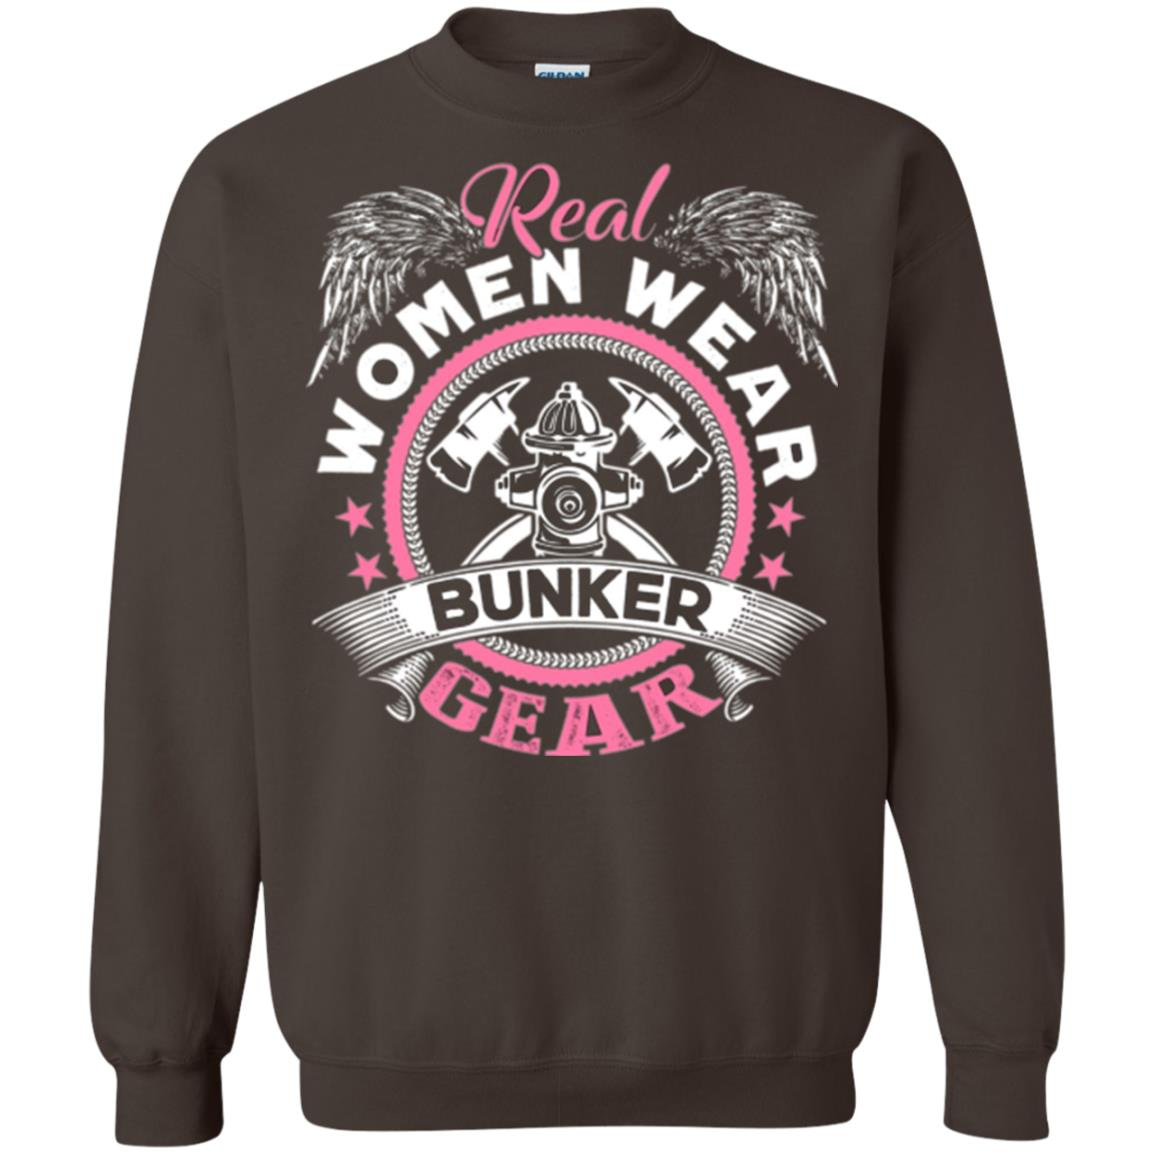 Inktee Store - Firefighter Women Wear Bunker Gear Sweatshirt Image